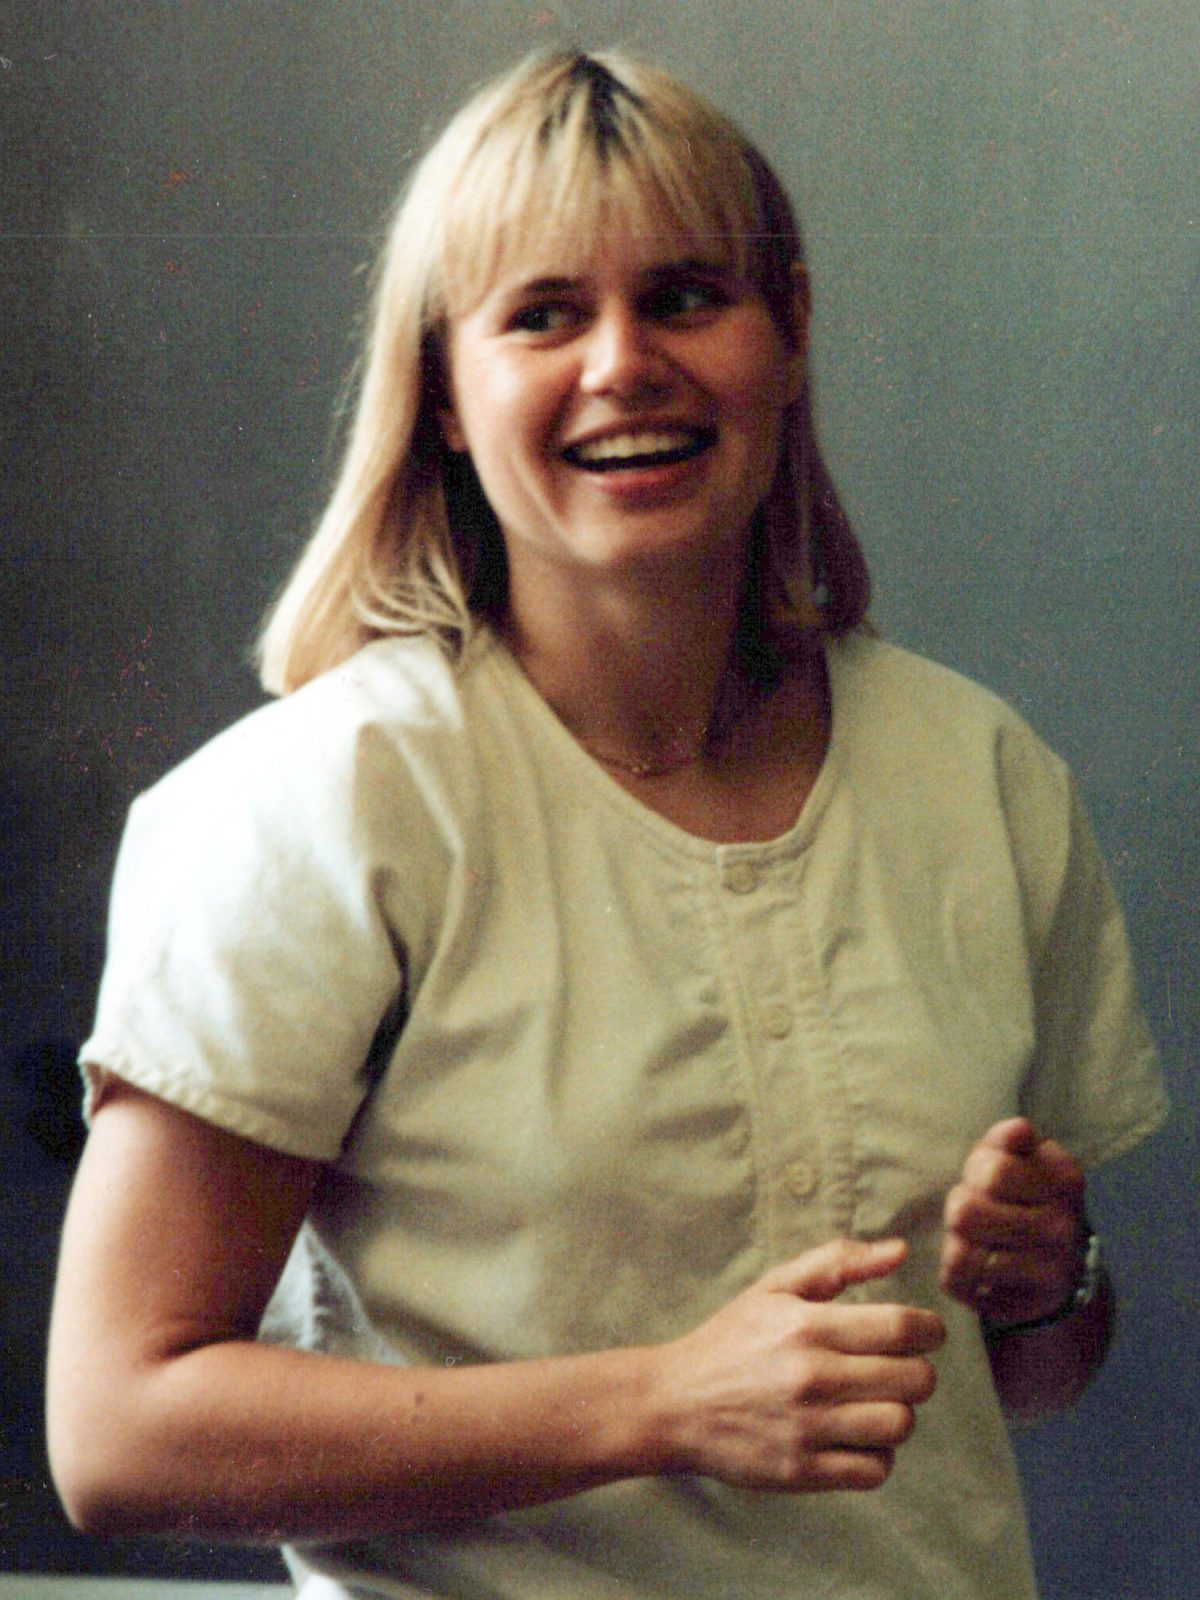 Jeune fille blonde souriante, portant un chemisier style années 1980.